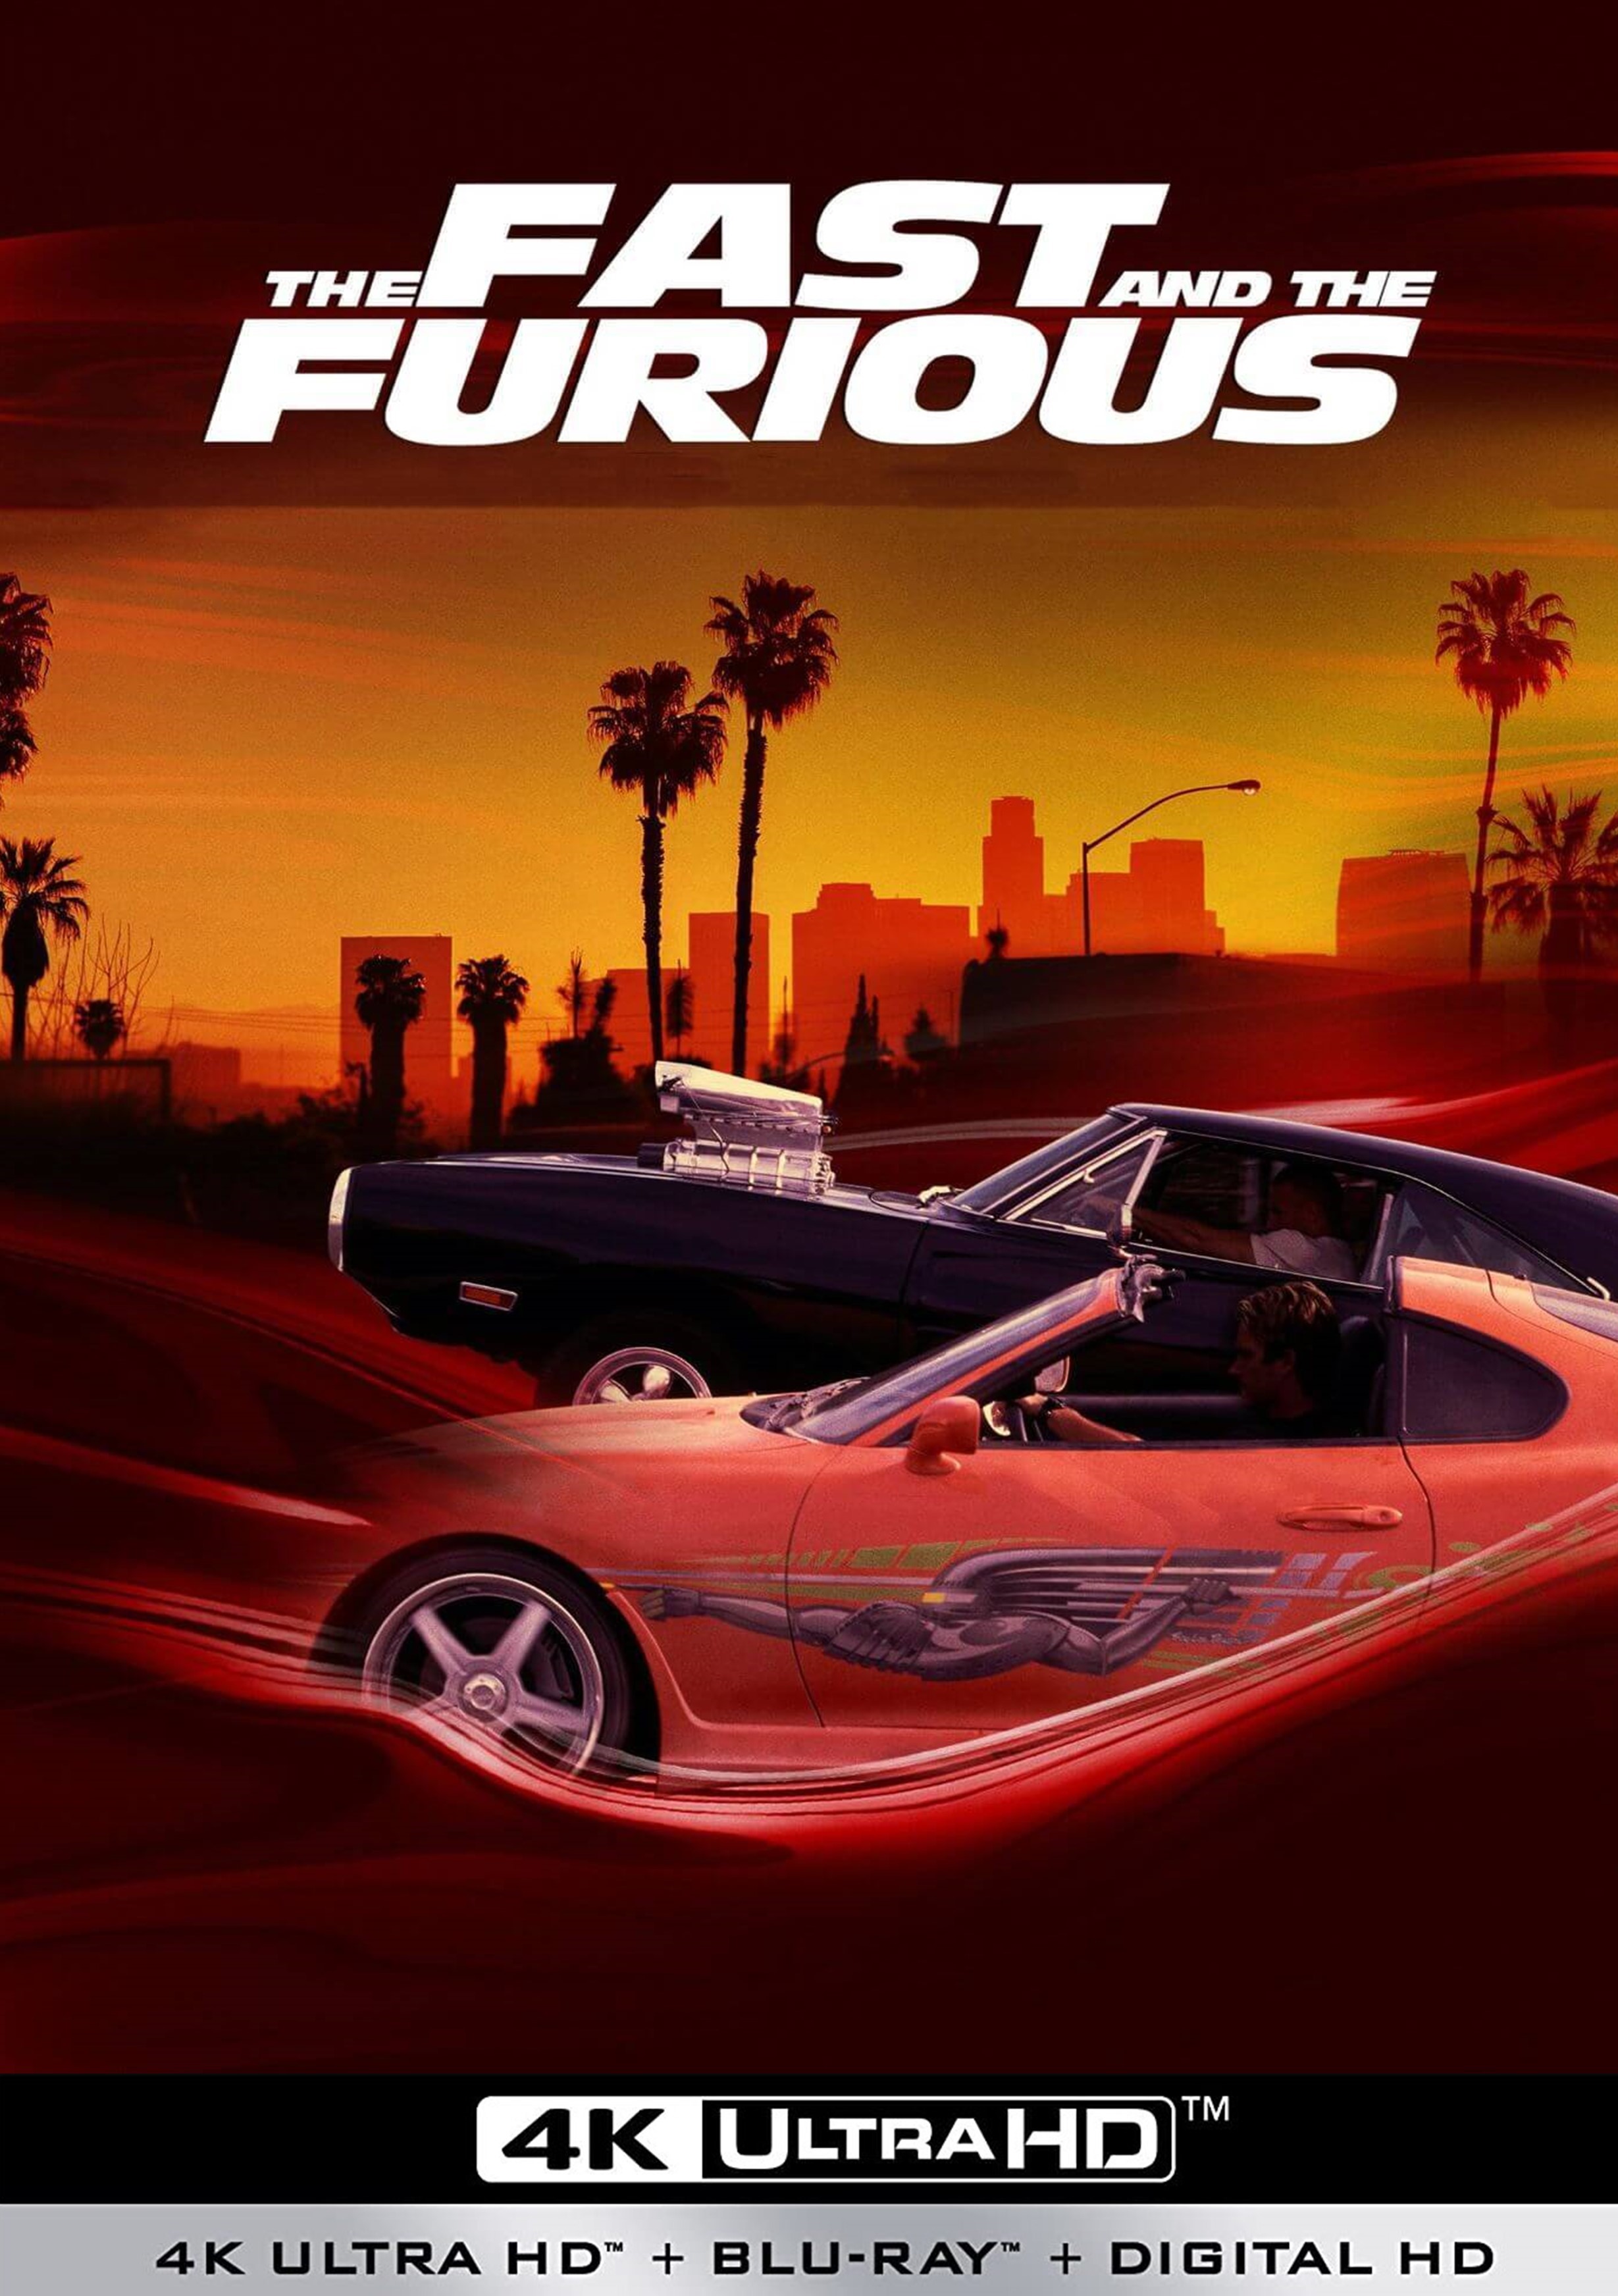 Stiahni si UHD Filmy Rychle a zbesile / The Fast & The Furious (2001)(CZ/EN)(2160p 4k BRRip) = CSFD 70%